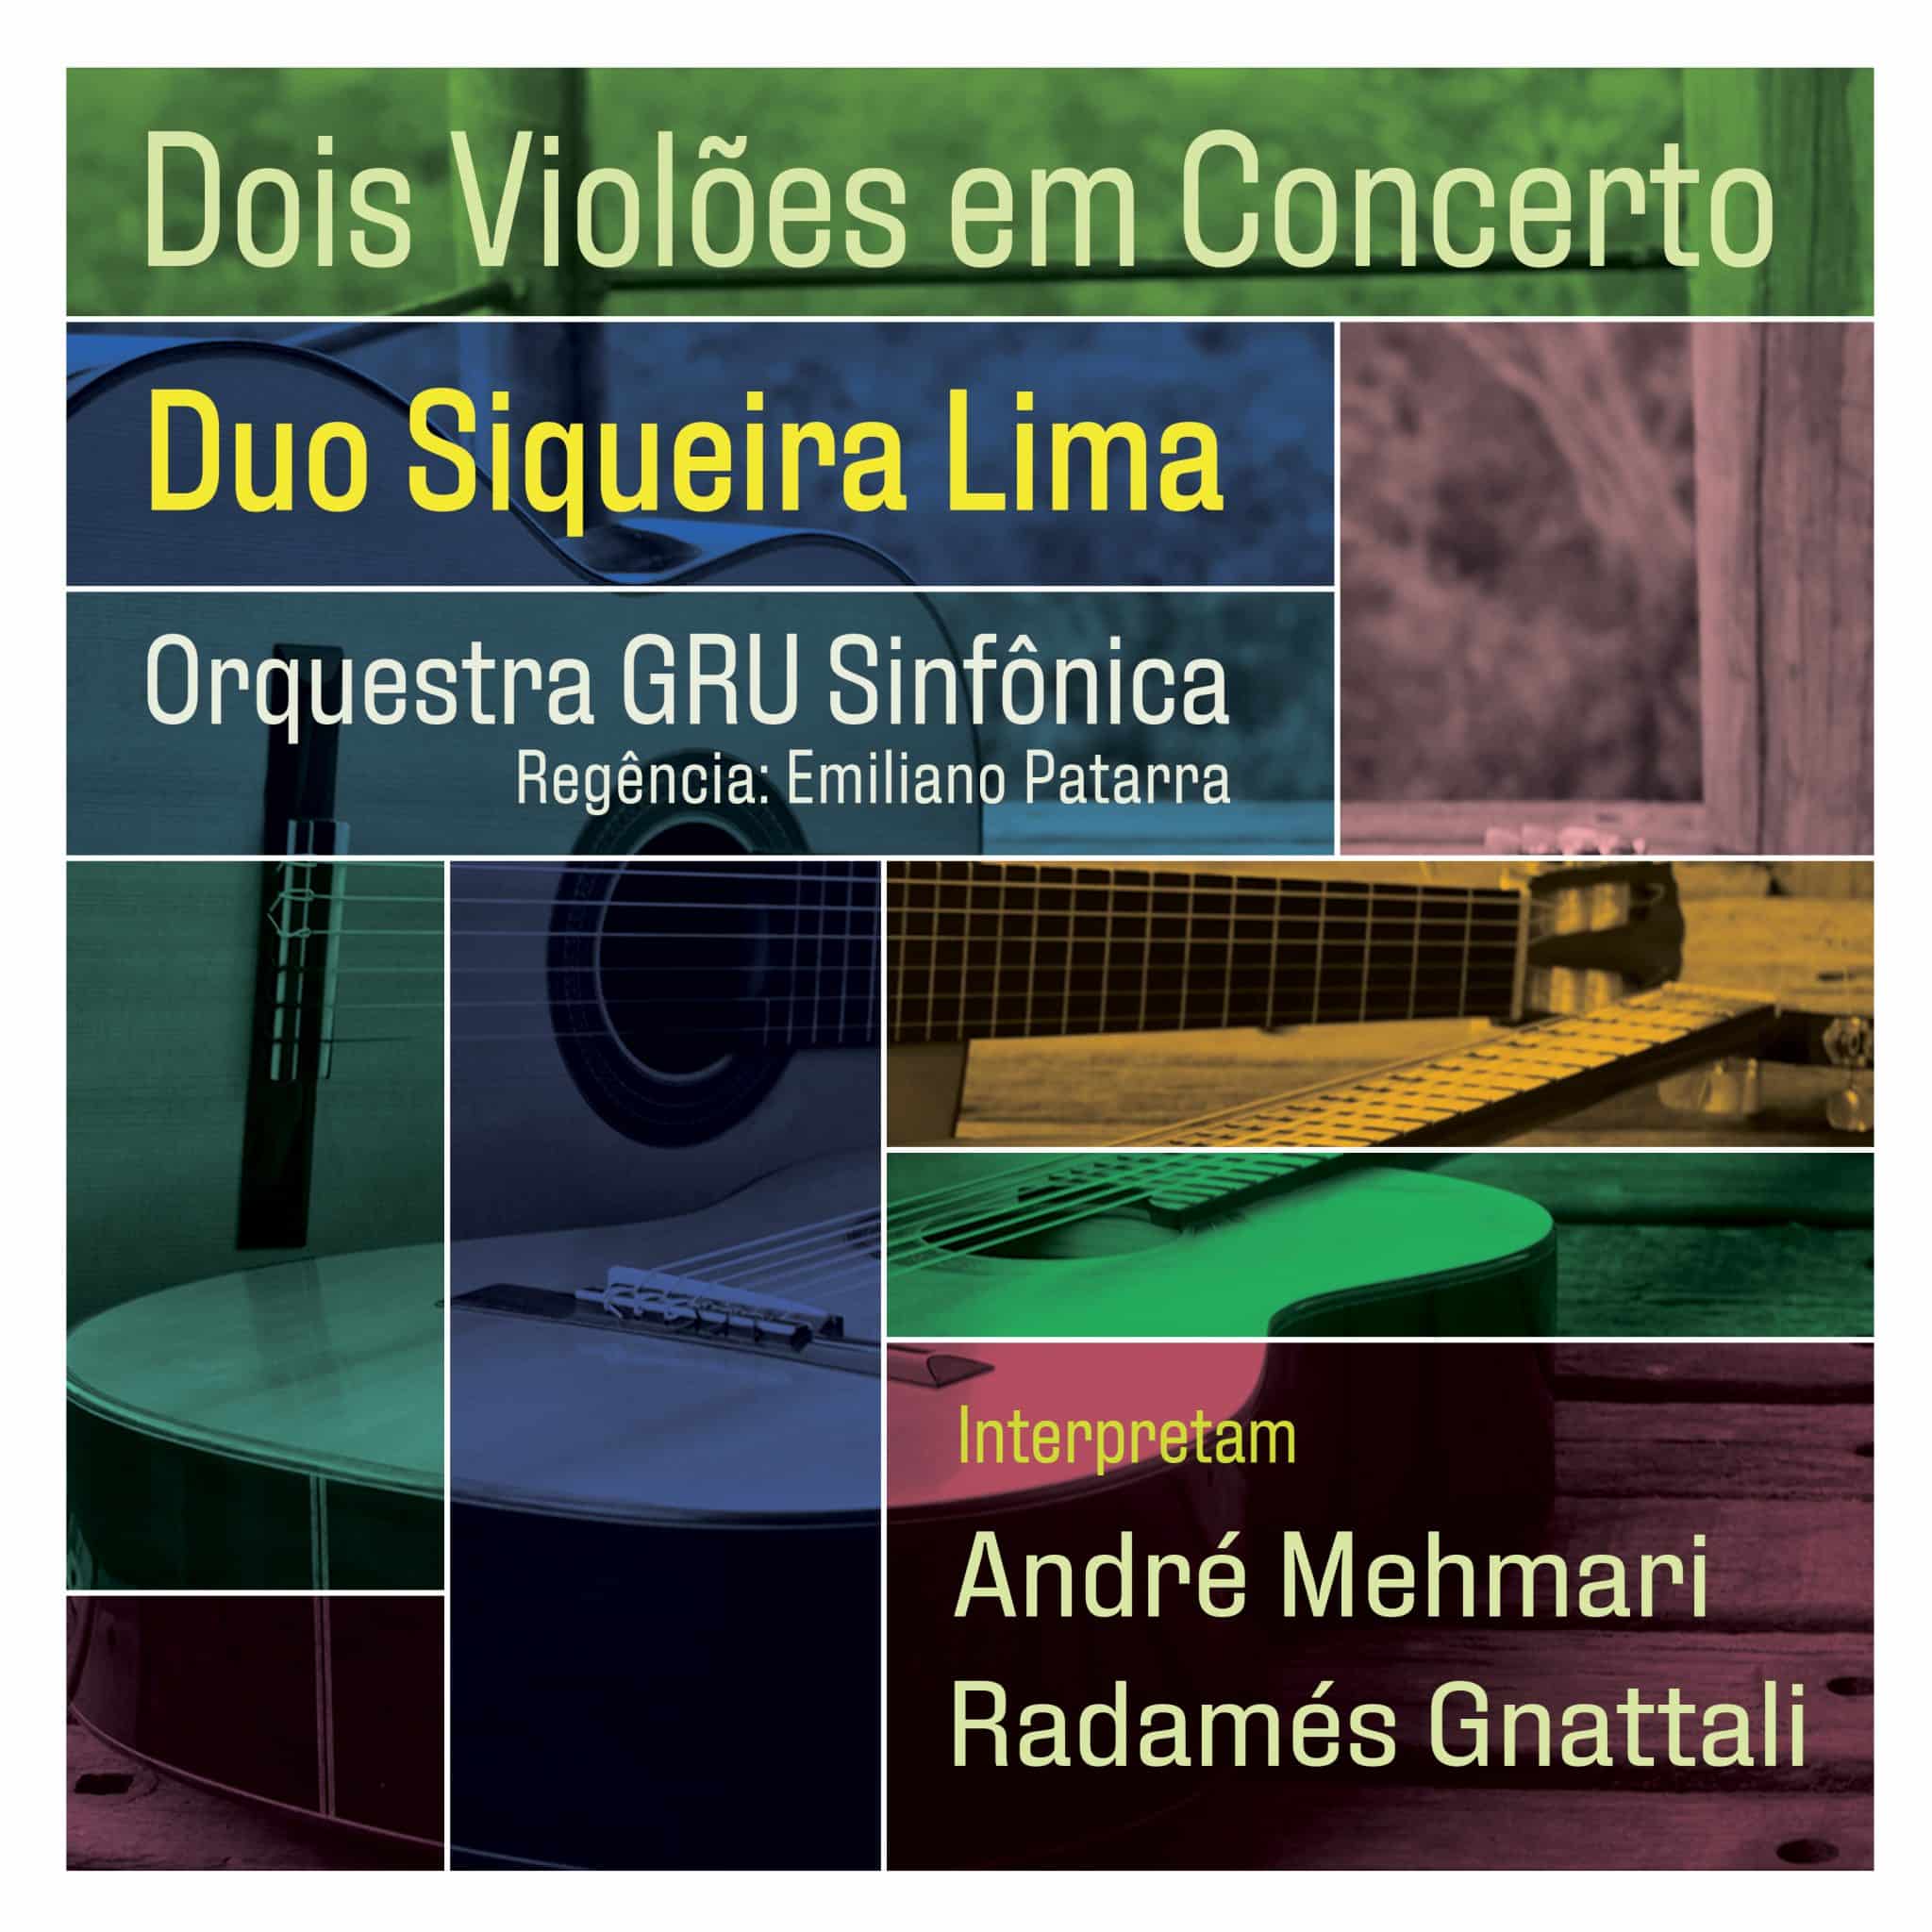 revistaprosaversoearte.com - Duo Siqueira Lima e Orquestra GRU Sinfônica lançam álbum 'Dois Violões em Concerto'